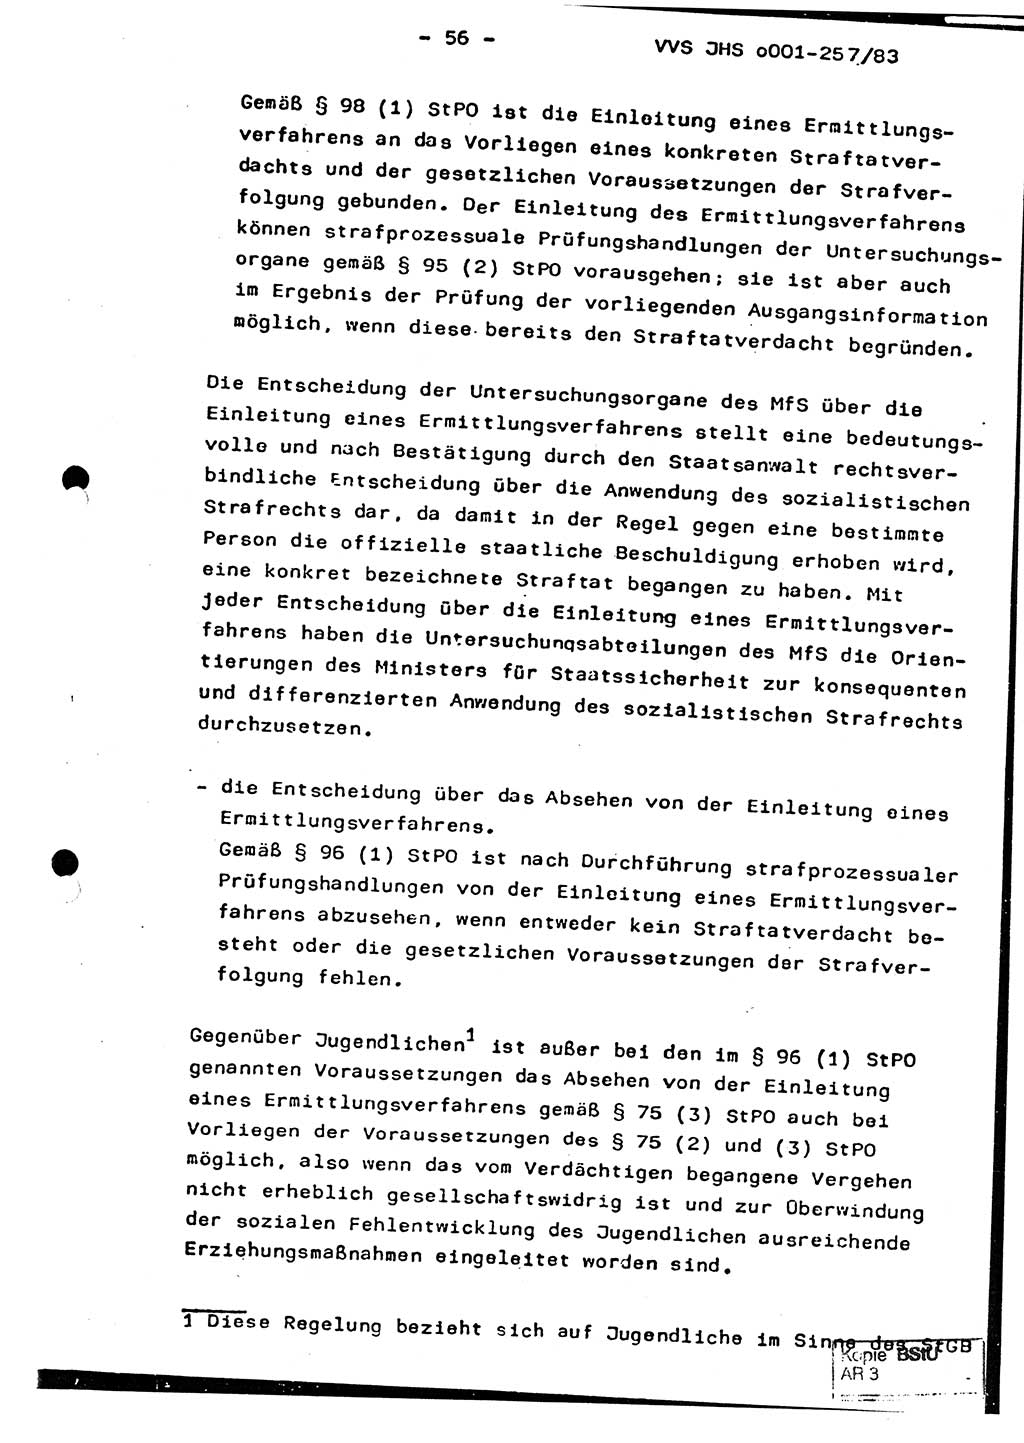 Dissertation, Oberst Helmut Lubas (BV Mdg.), Oberstleutnant Manfred Eschberger (HA IX), Oberleutnant Hans-Jürgen Ludwig (JHS), Ministerium für Staatssicherheit (MfS) [Deutsche Demokratische Republik (DDR)], Juristische Hochschule (JHS), Vertrauliche Verschlußsache (VVS) o001-257/83, Potsdam 1983, Seite 56 (Diss. MfS DDR JHS VVS o001-257/83 1983, S. 56)